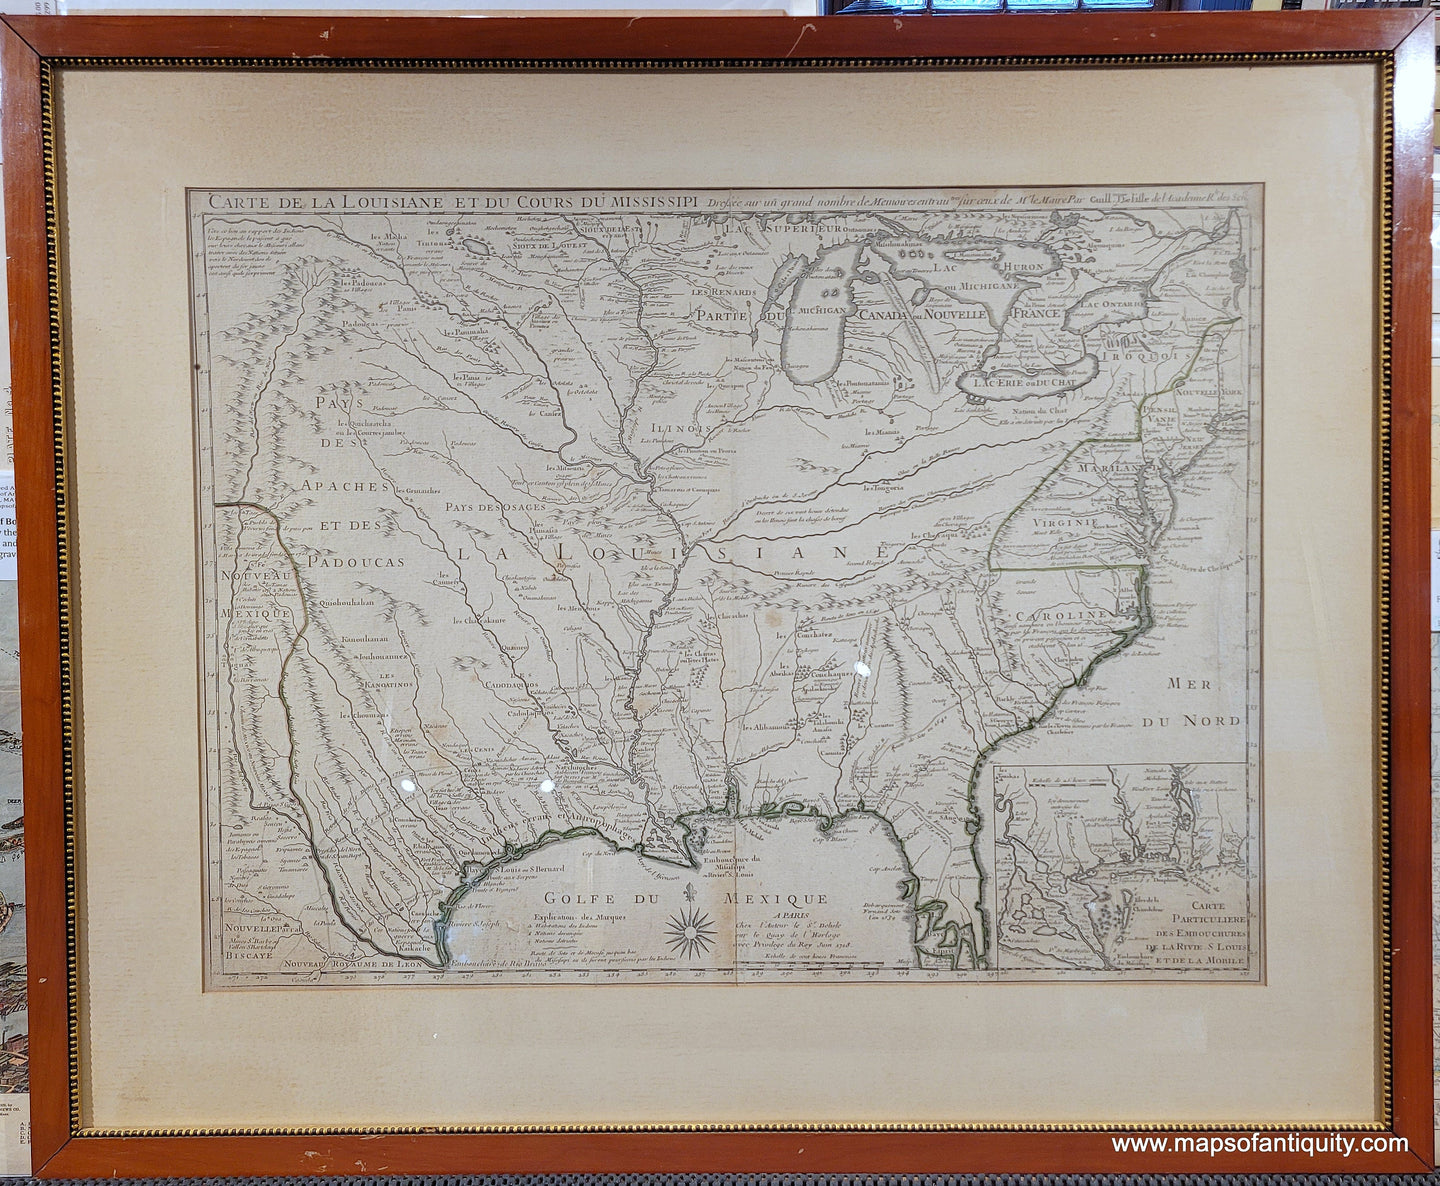 Genuine-Antique-Map-Carte-de-la-Louisiane-et-du-Cours-du-Mississipi-1st-state--1718-Guillaume-de-L-Isle-Maps-Of-Antiquity